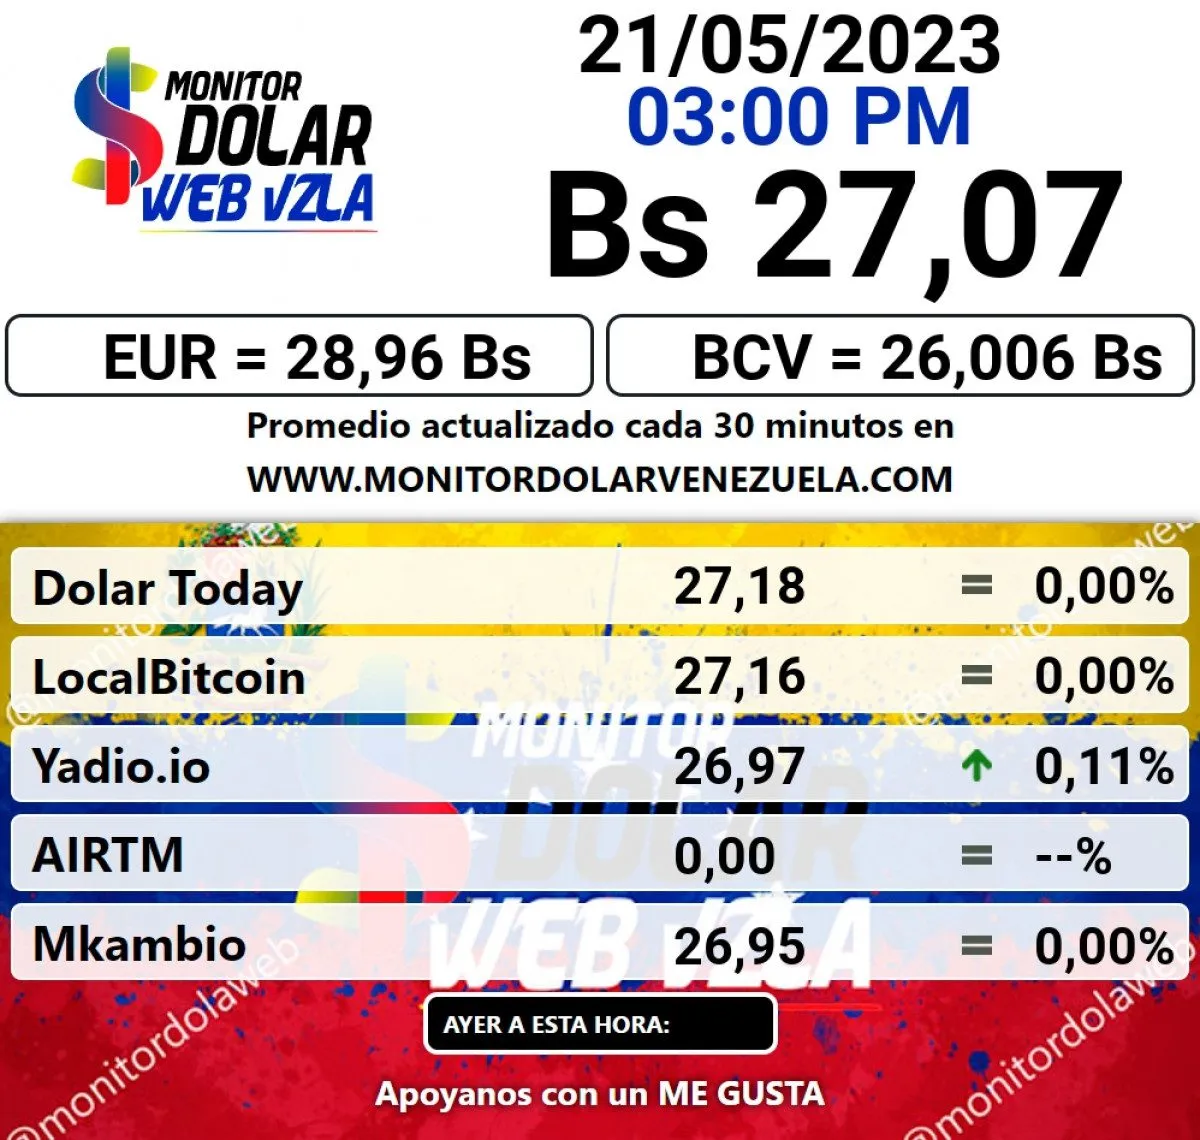 dolartoday en venezuela precio del dolar este lunes 22 de mayo de 2023 laverdaddemonagas.com monitor